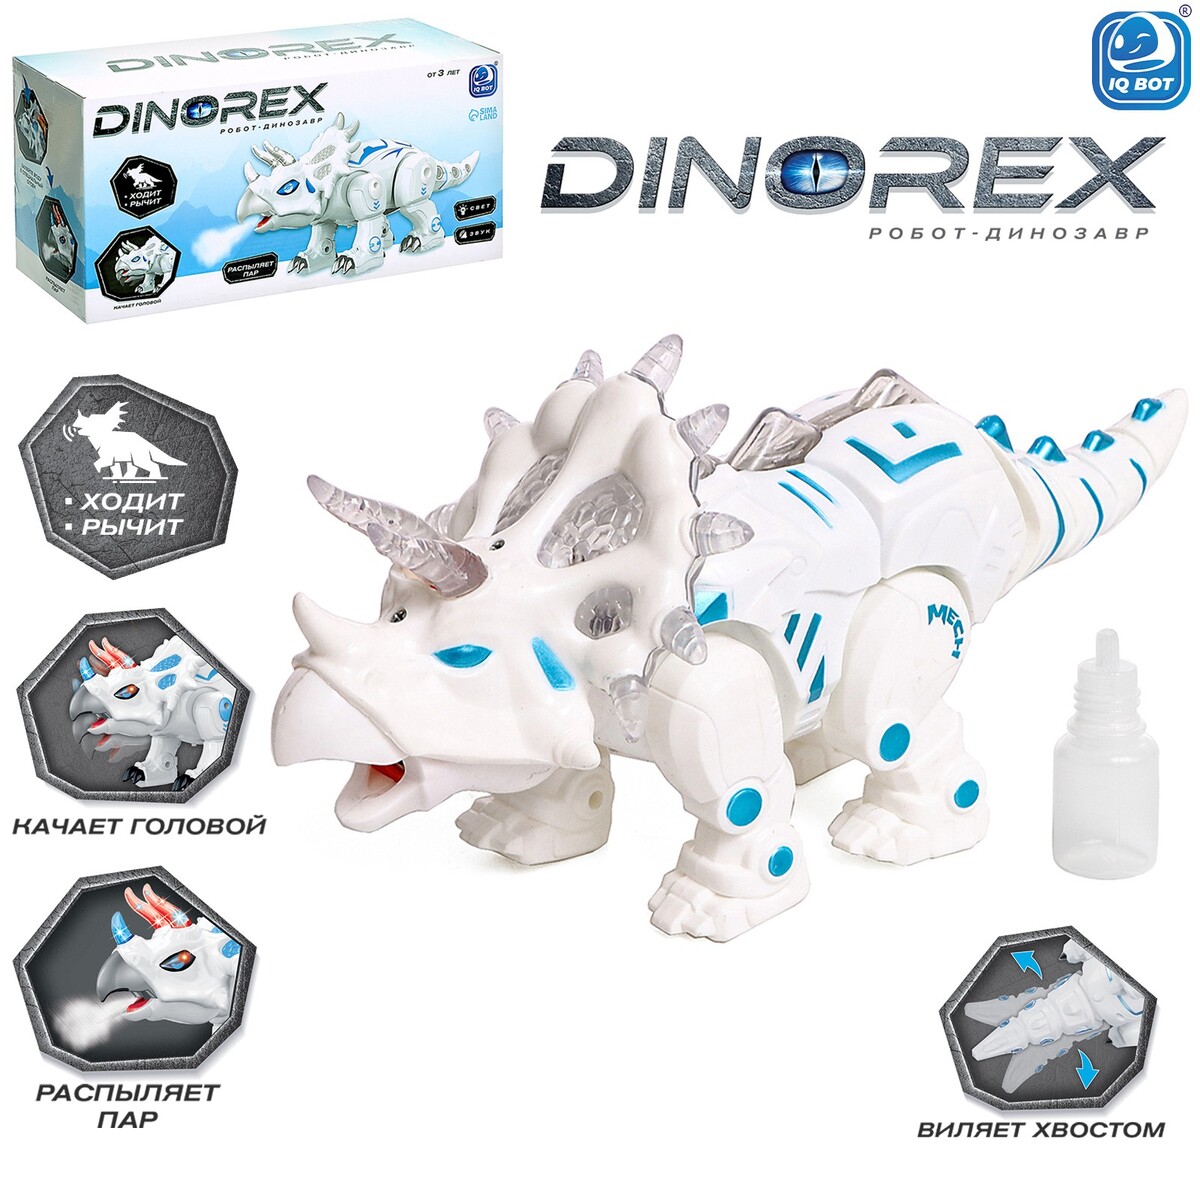 Робот динозавр dinorex iq bot, интерактивный: световые и звуковые эффекты, на батарейках робот стрелок световые и звуковые эффекты работает от батареек а микс